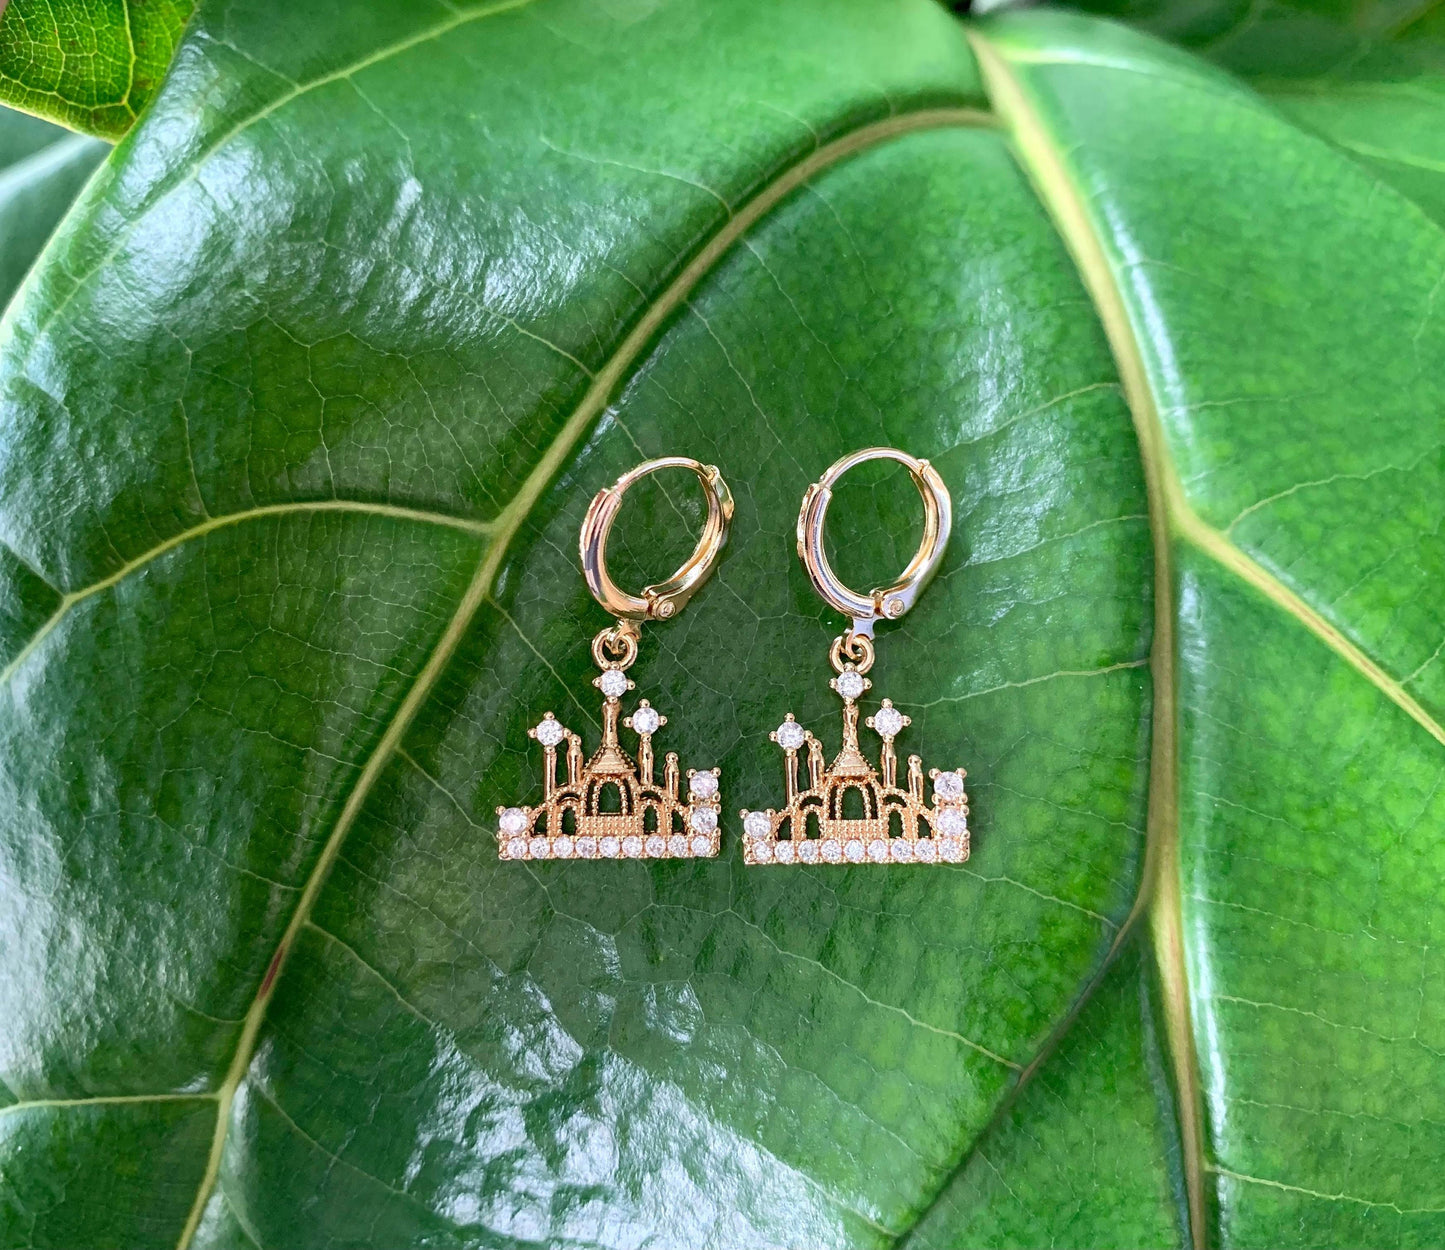 Unique Dainty Castle Earrings